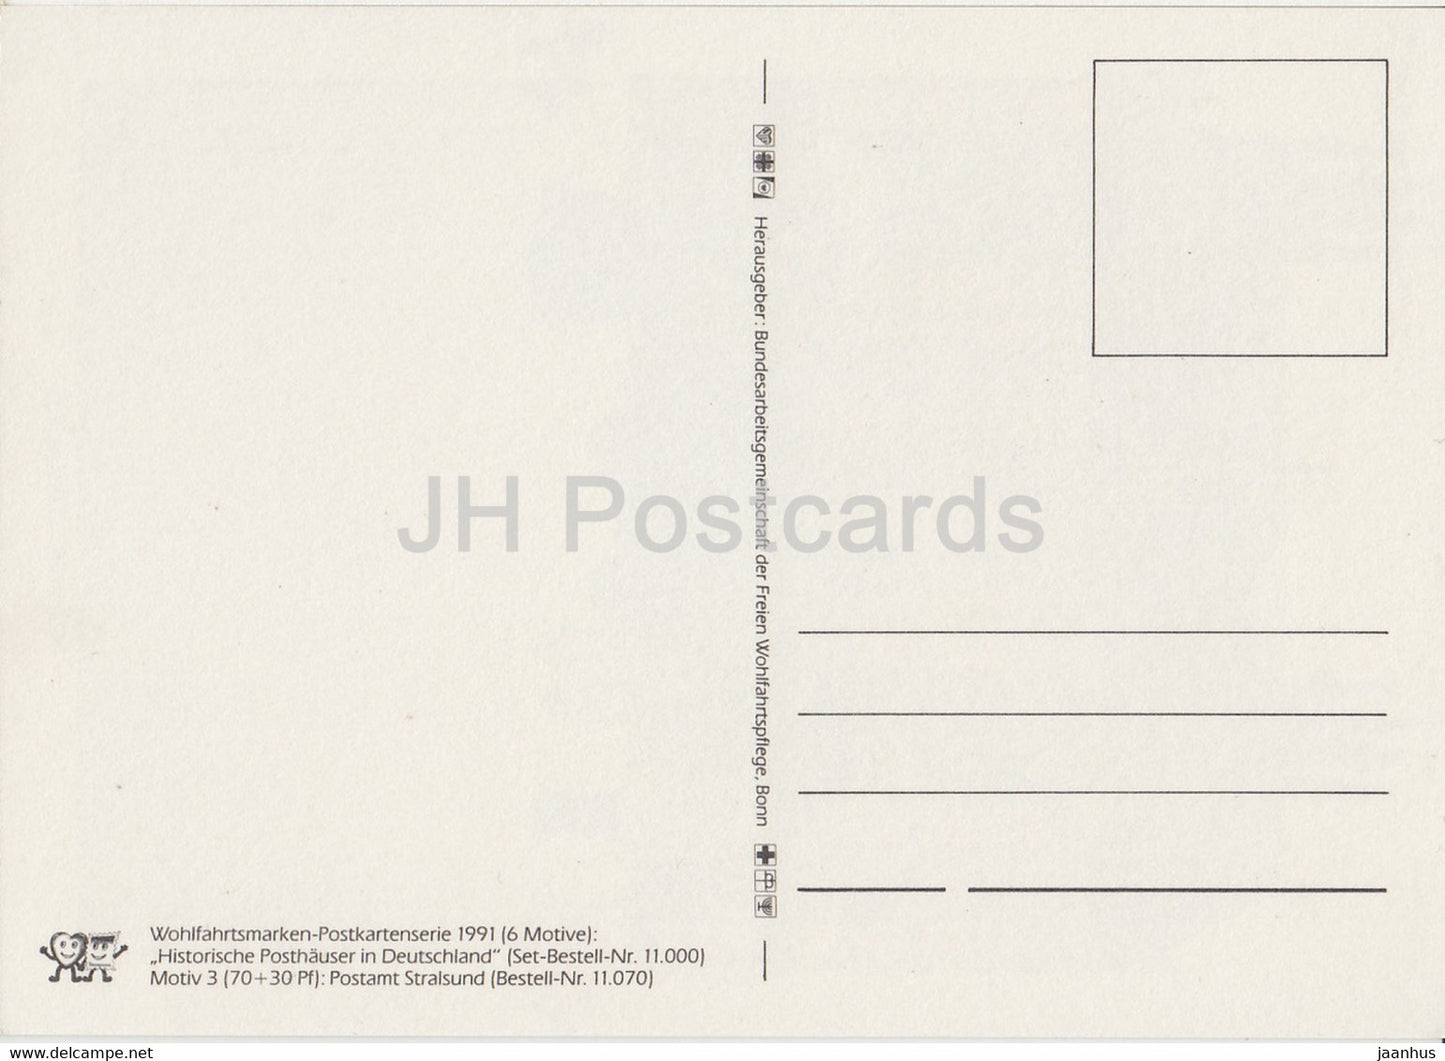 Postamt Stralsund - Illustration - 1991 - Deutschland - unbenutzt